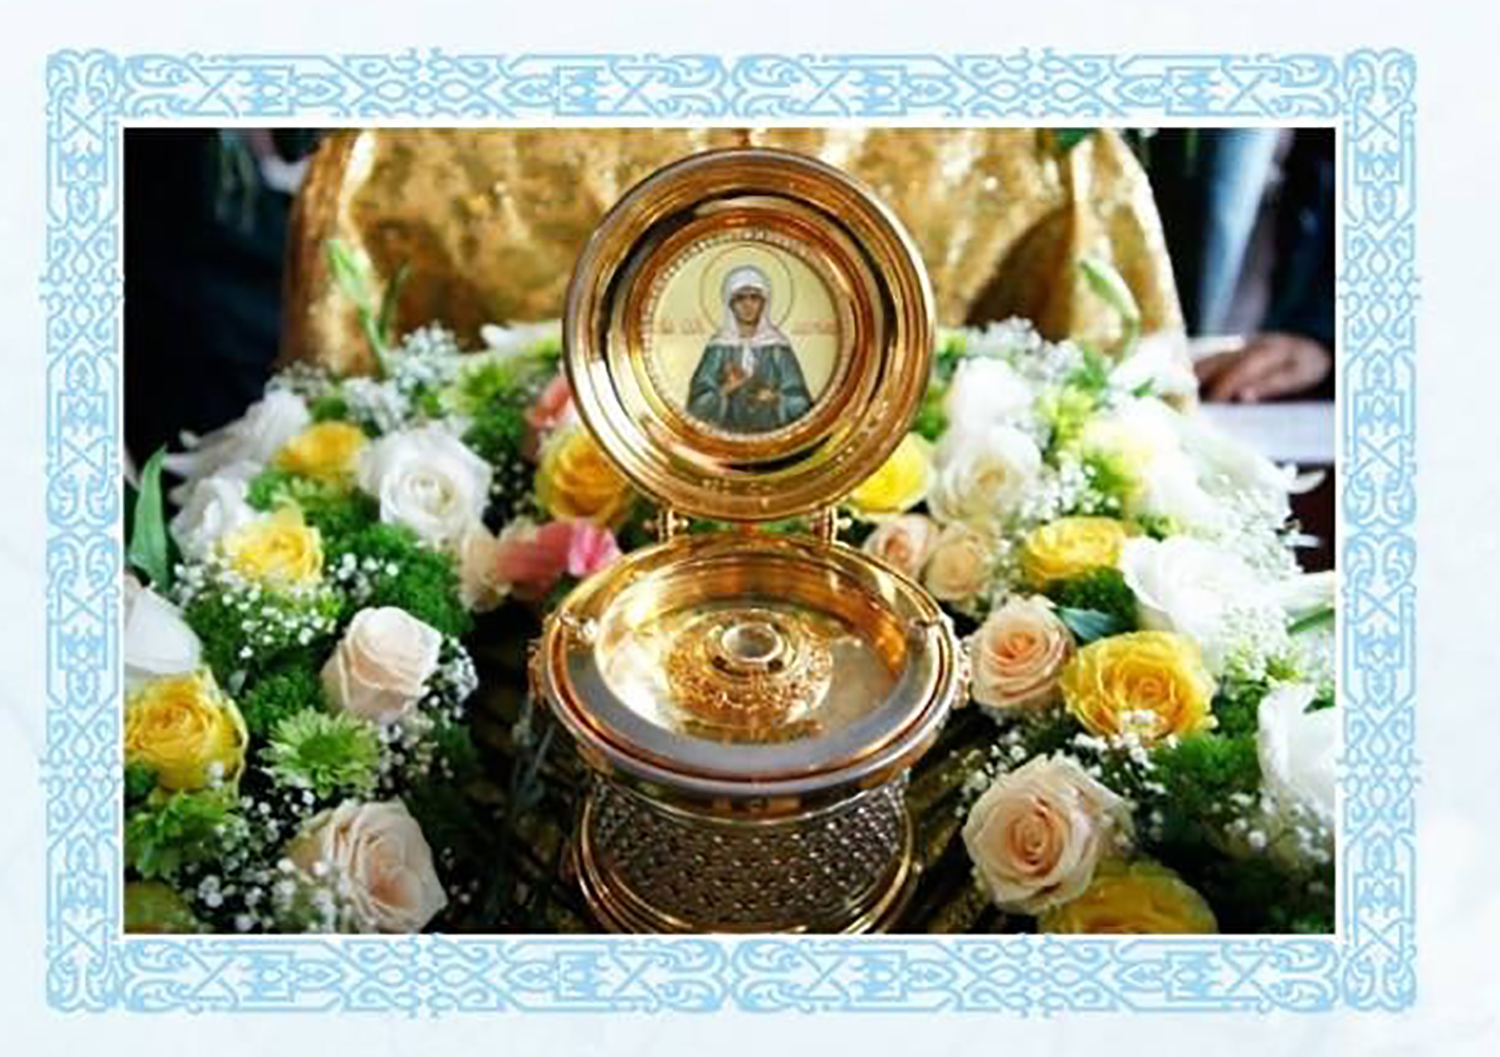 В Пинск прибудет ковчег с мощами святой Матроны Московской